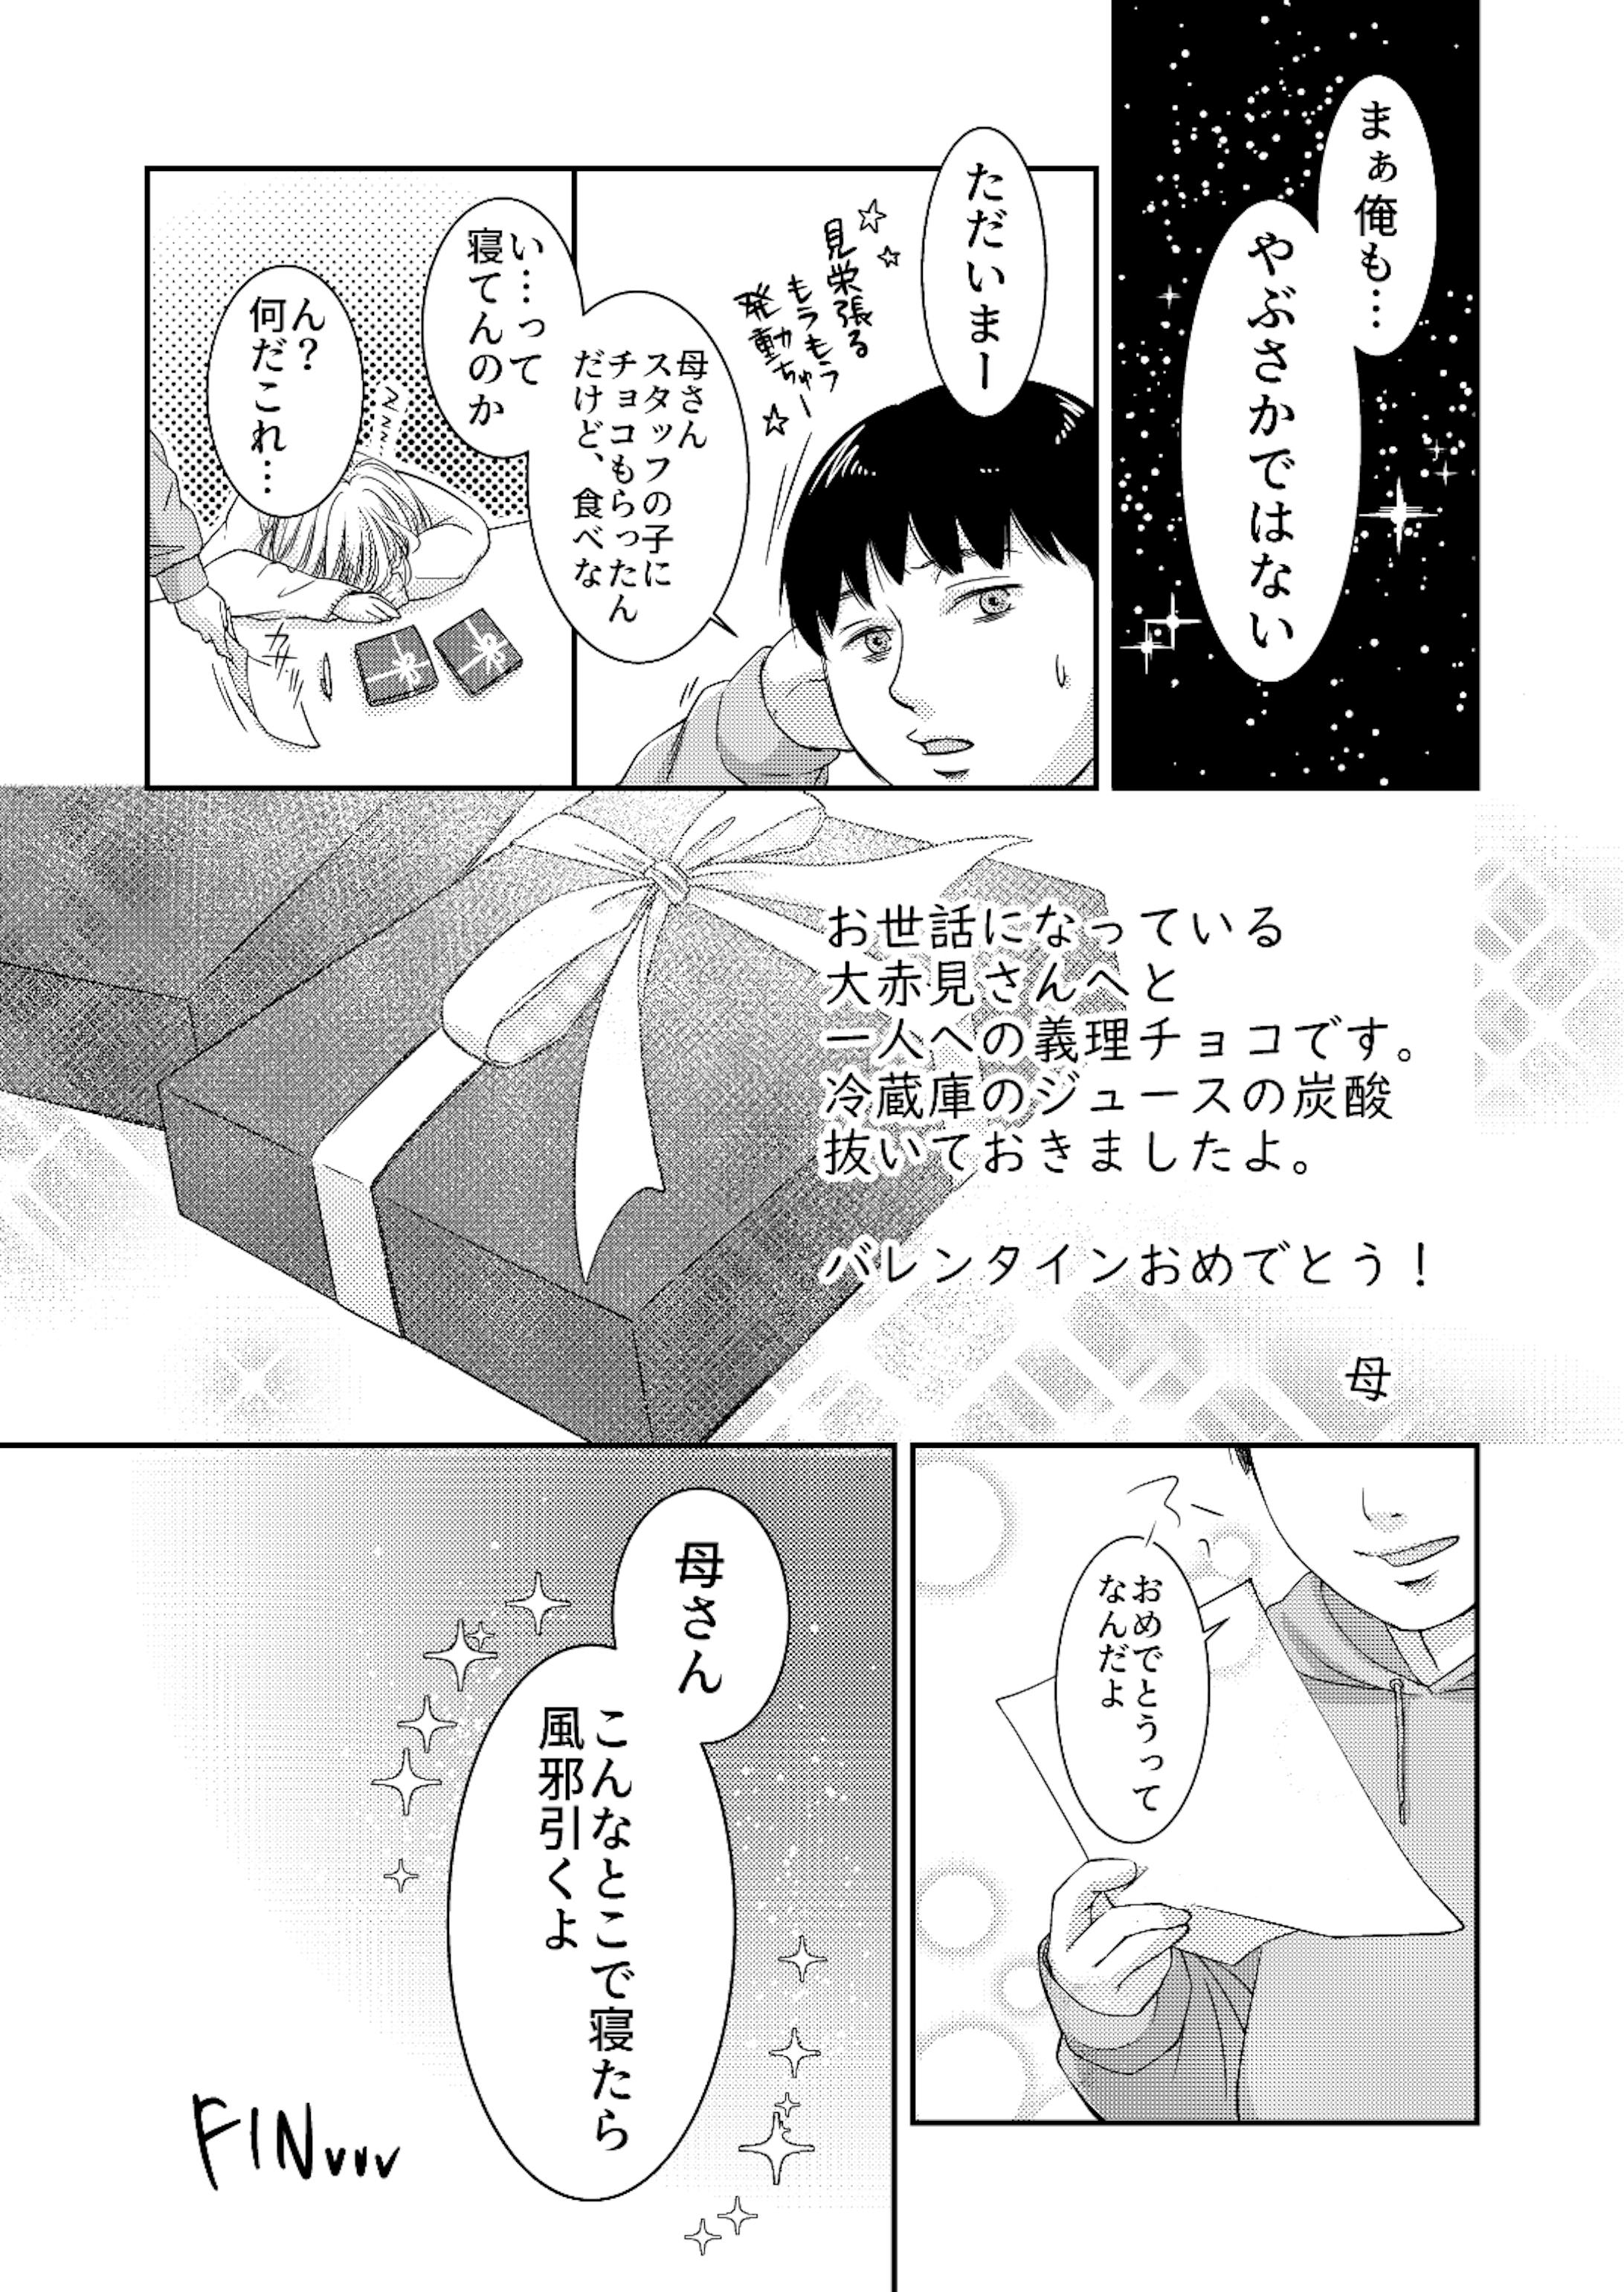 ナナフシギさんのファンアート漫画 01-4